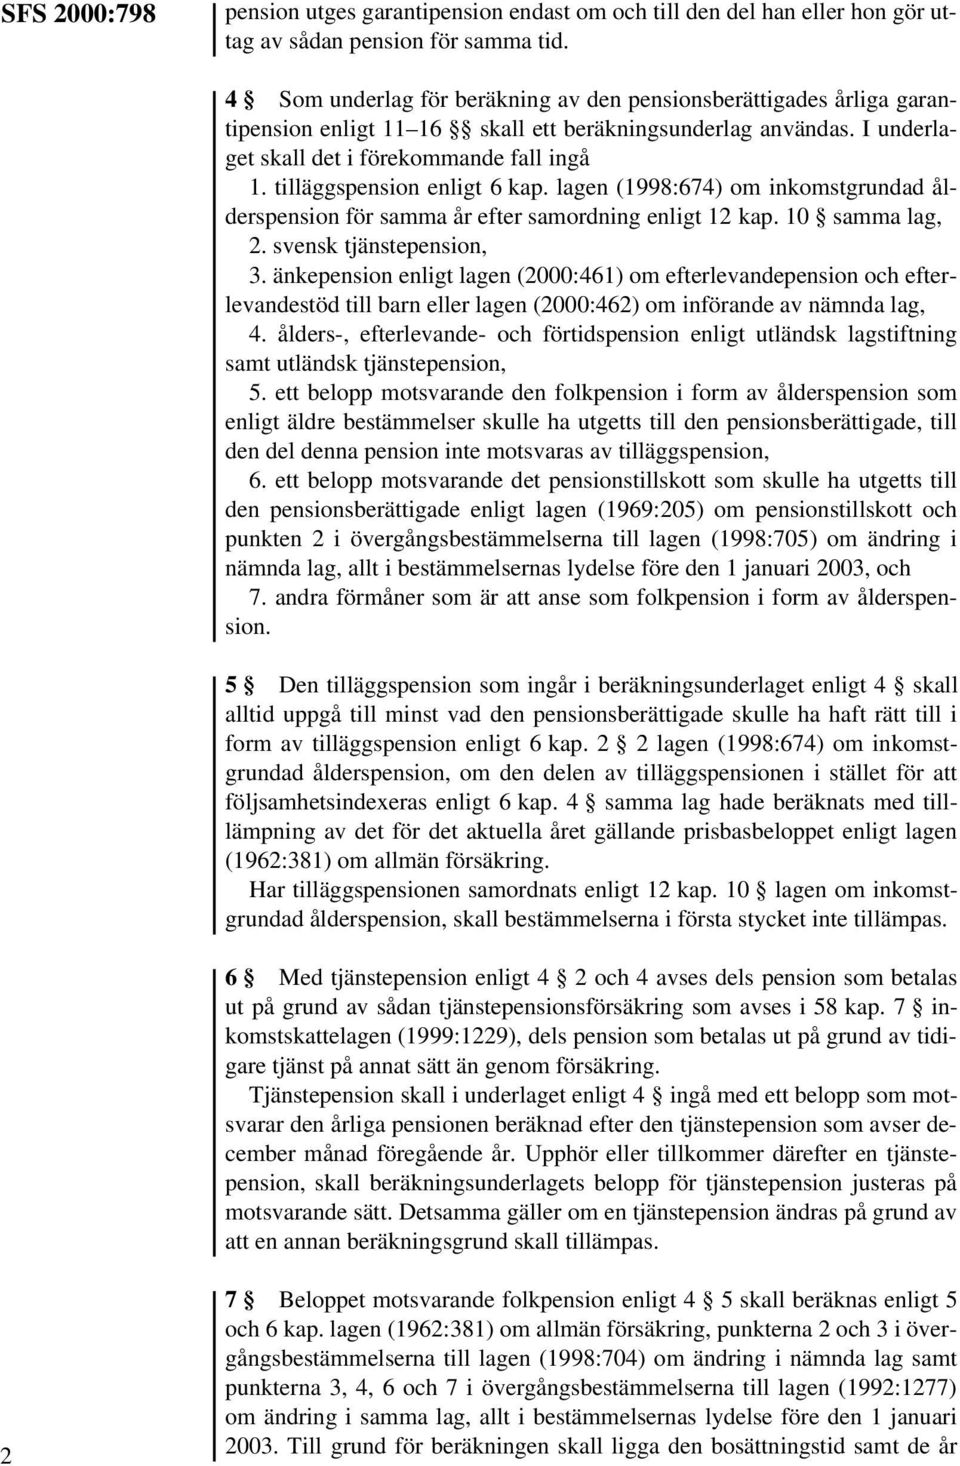 tilläggspension enligt 6 kap. lagen (1998:674) om inkomstgrundad ålderspension för samma år efter samordning enligt 12 kap. 10 samma lag, 2. svensk tjänstepension, 3.